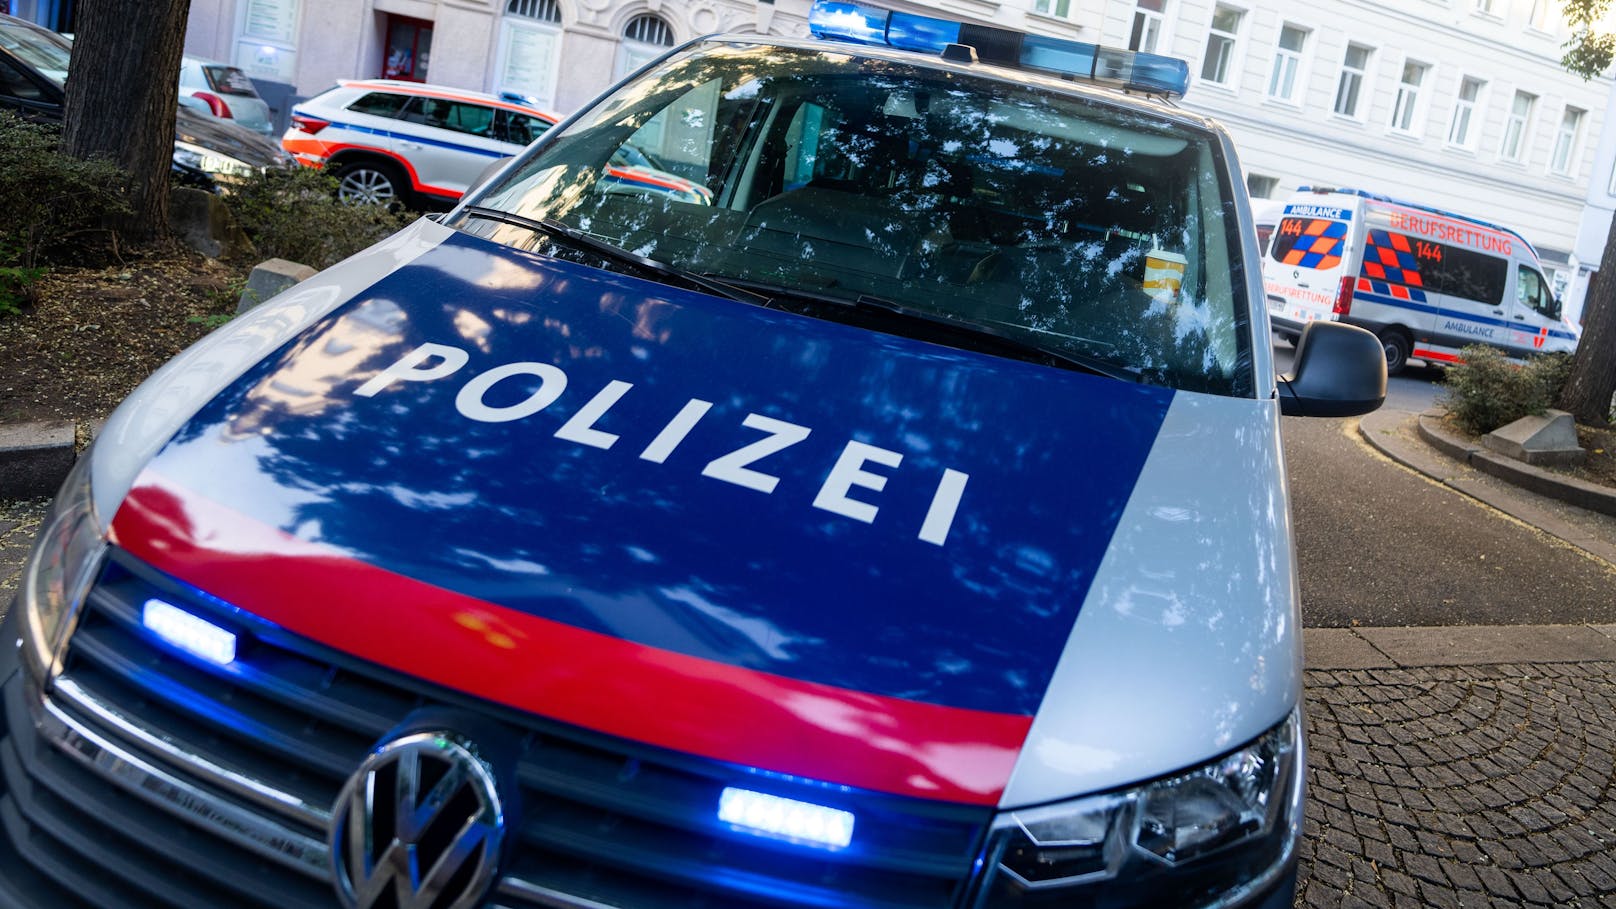 Auto in Tiefgarage aufgebrochen – Duo festgenommen